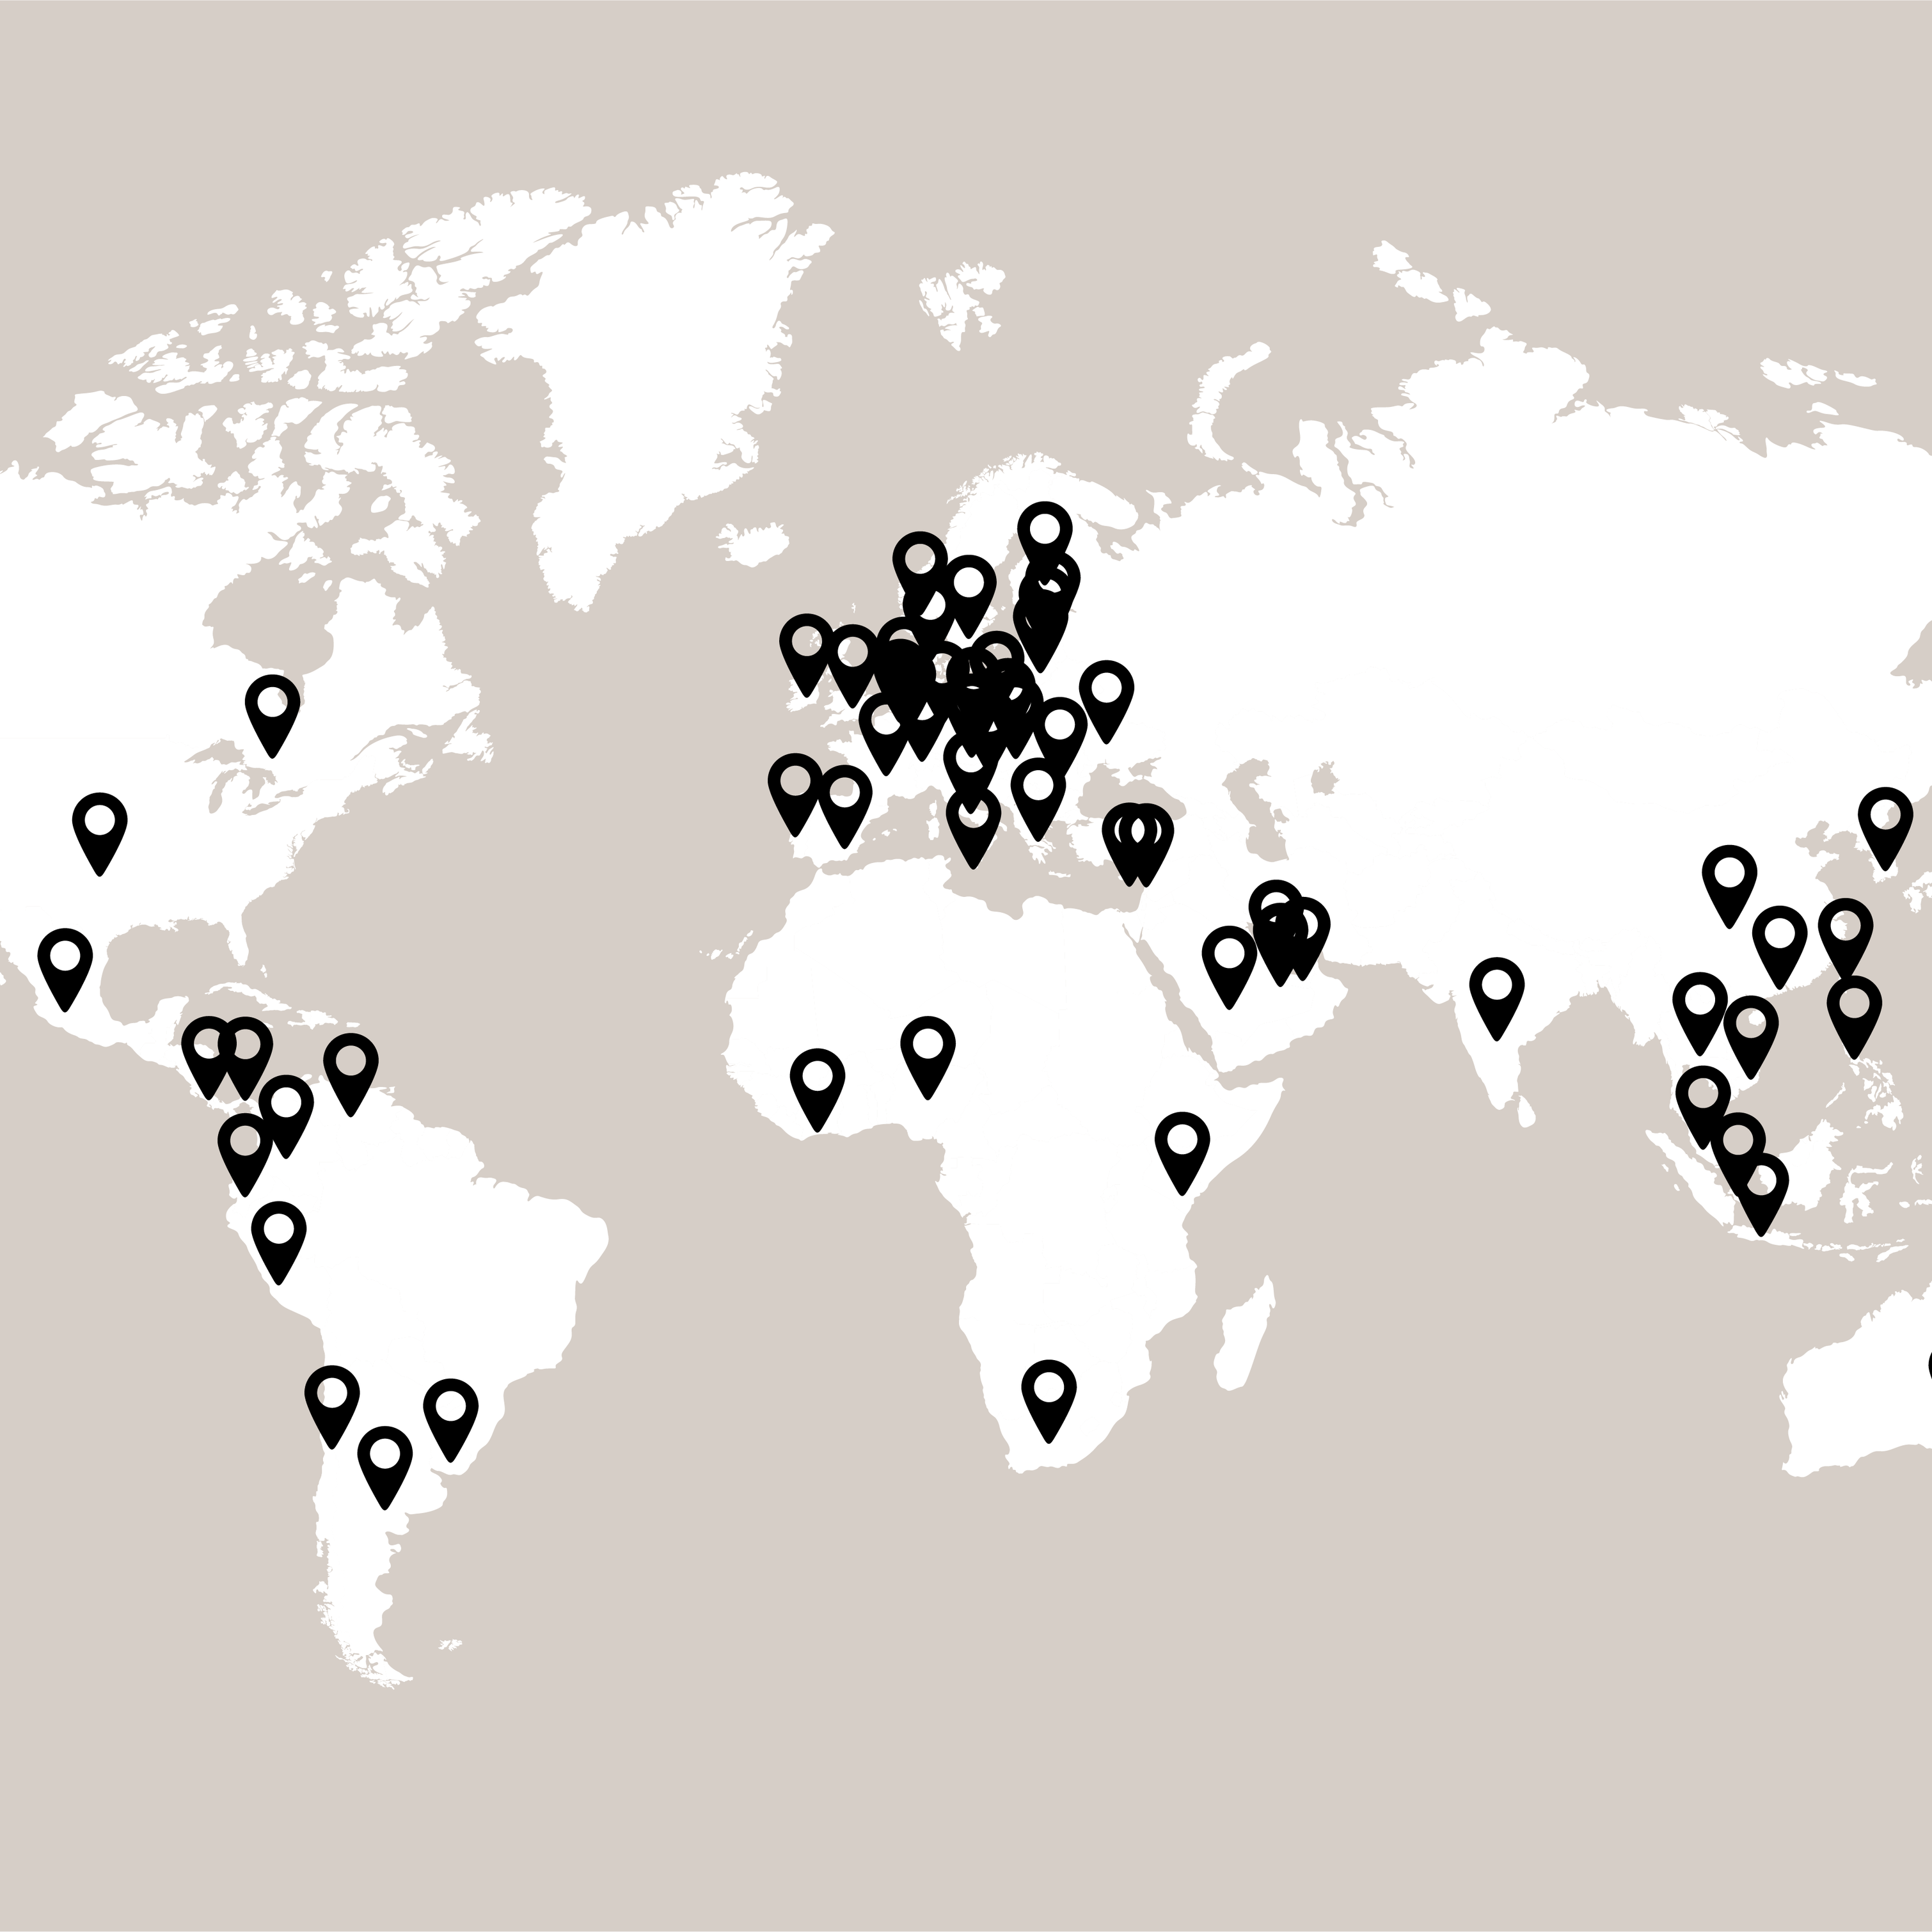 各国のボーコンセプトストアの位置を示すマークが記載された世界地図。